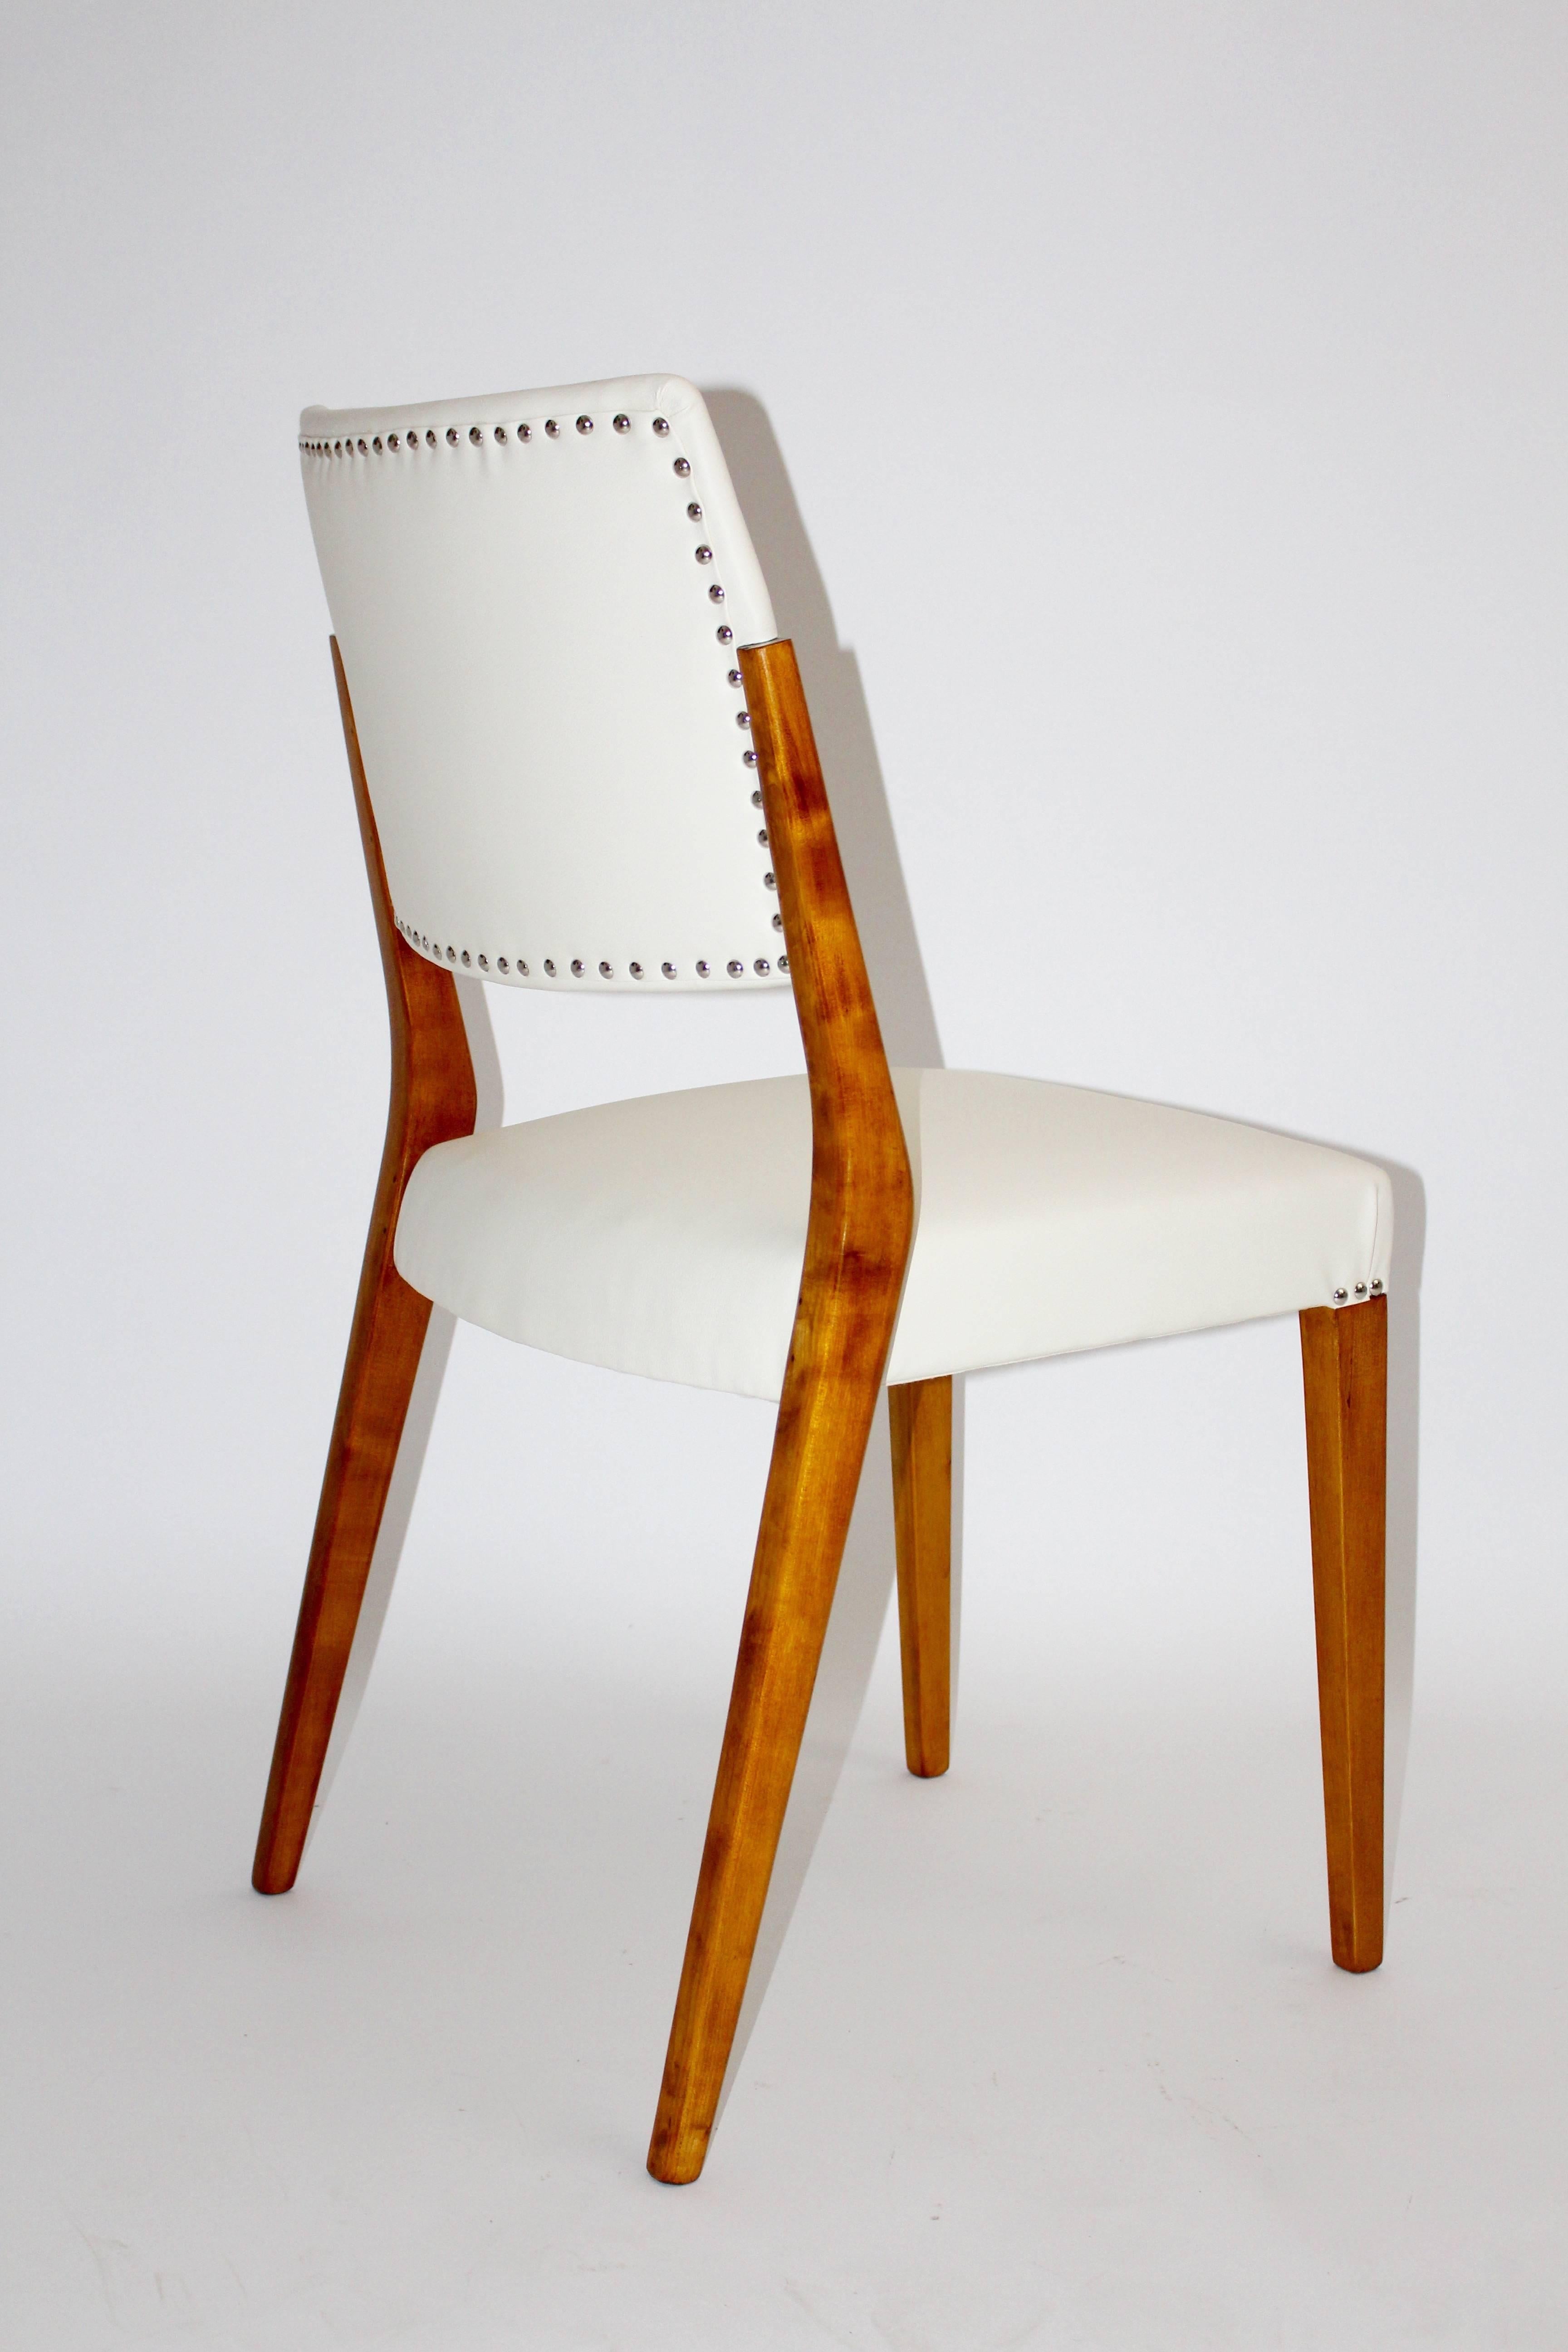 Mid Century Modern Vintage Stuhl oder Beistellstuhl, der von dem österreichischen Architekten Karl Schwanzer (1918-1975) entworfen und von Thonet Mundus hergestellt wurde (etikettiert).
Dieser schöne Stuhl hat ein Gestell aus handpoliertem